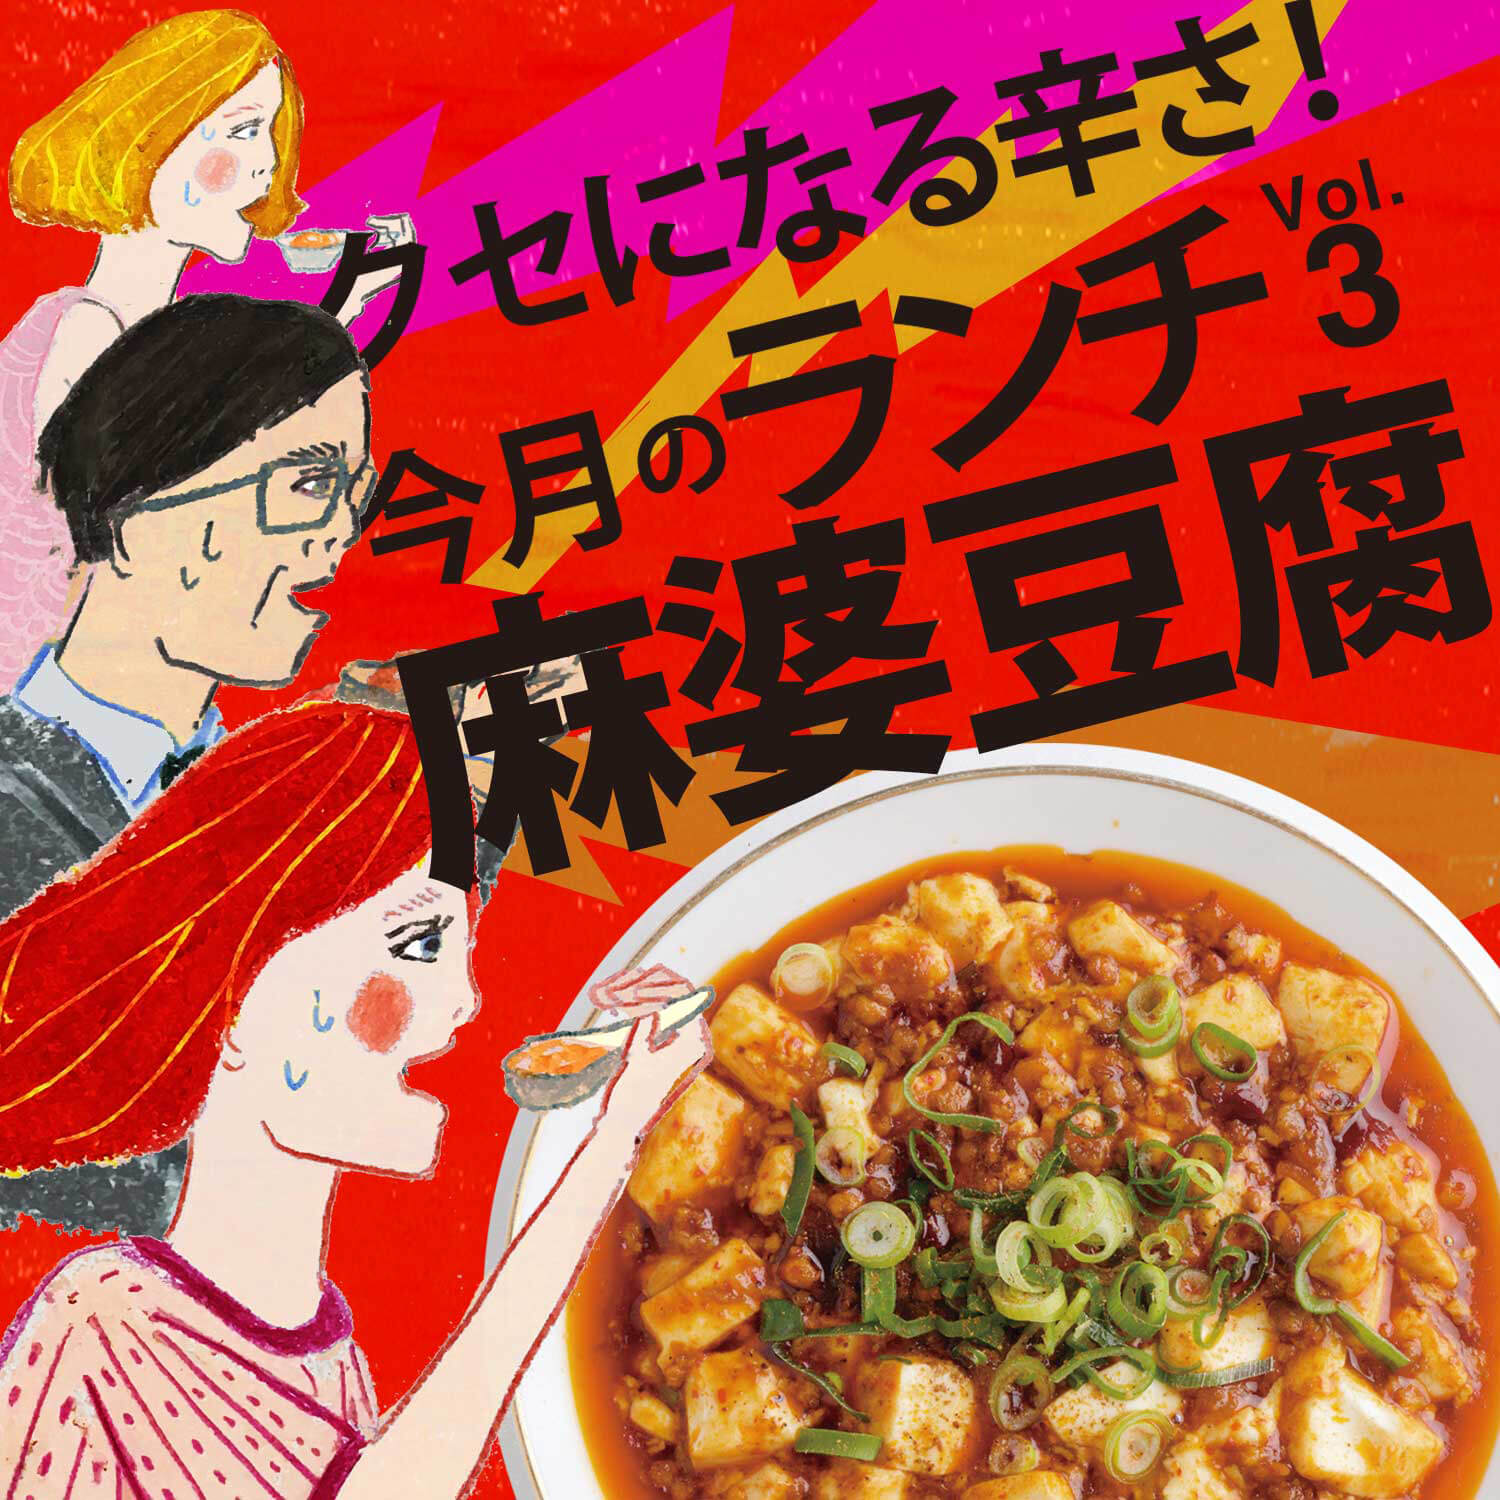 京都 滋賀の麻婆豆腐 今月のランチ Vol 3 Web Leaf